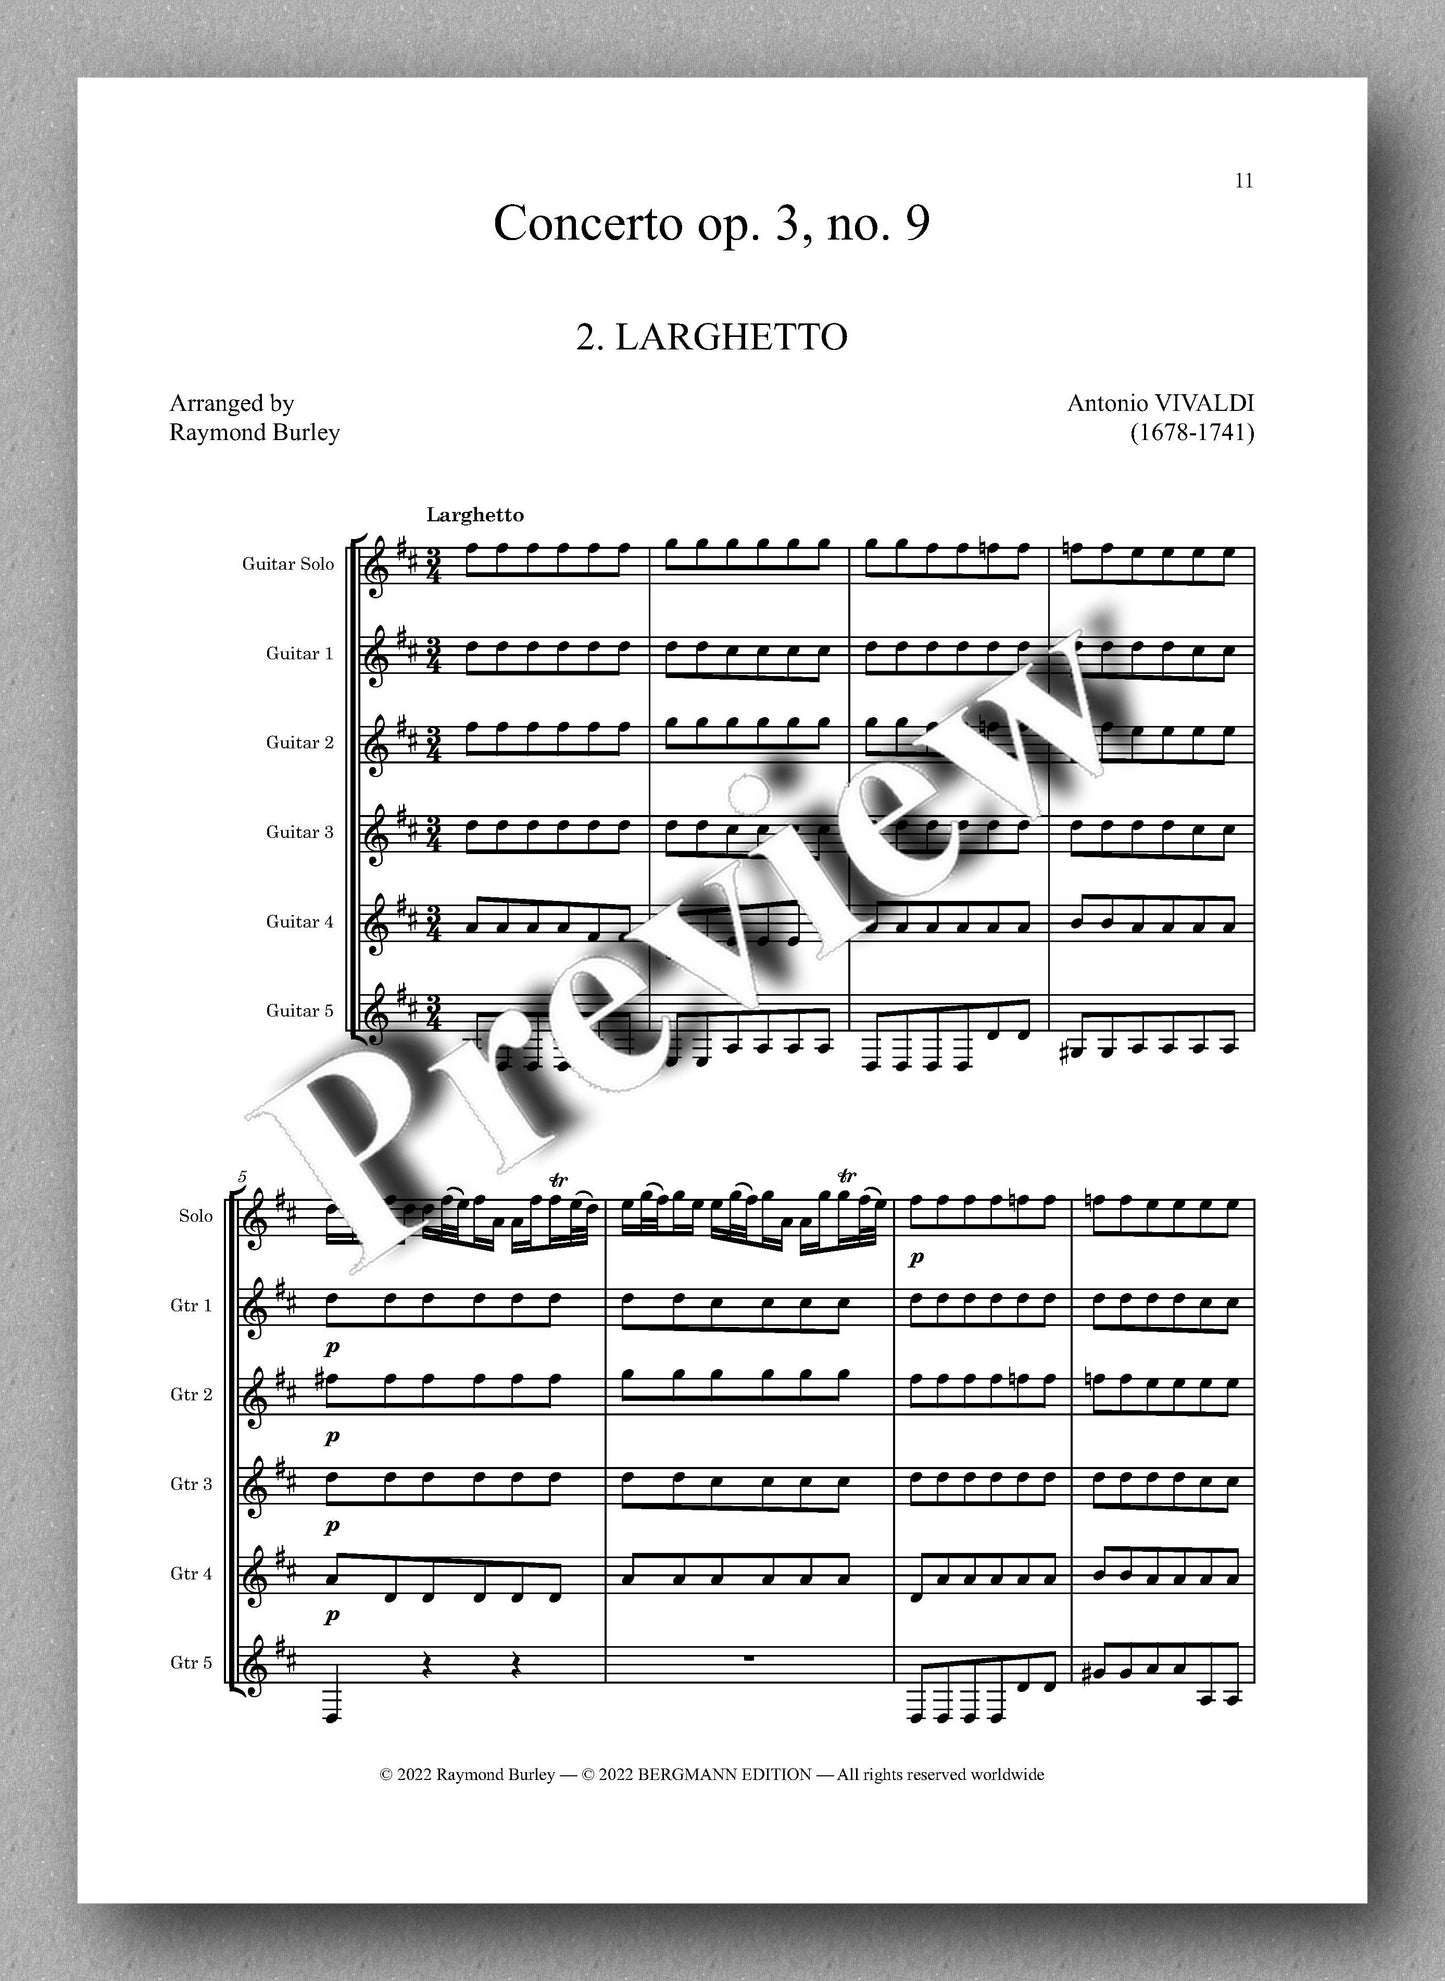 Vivaldi-Burley, Concerto op. 3, no. 9 - music score 2